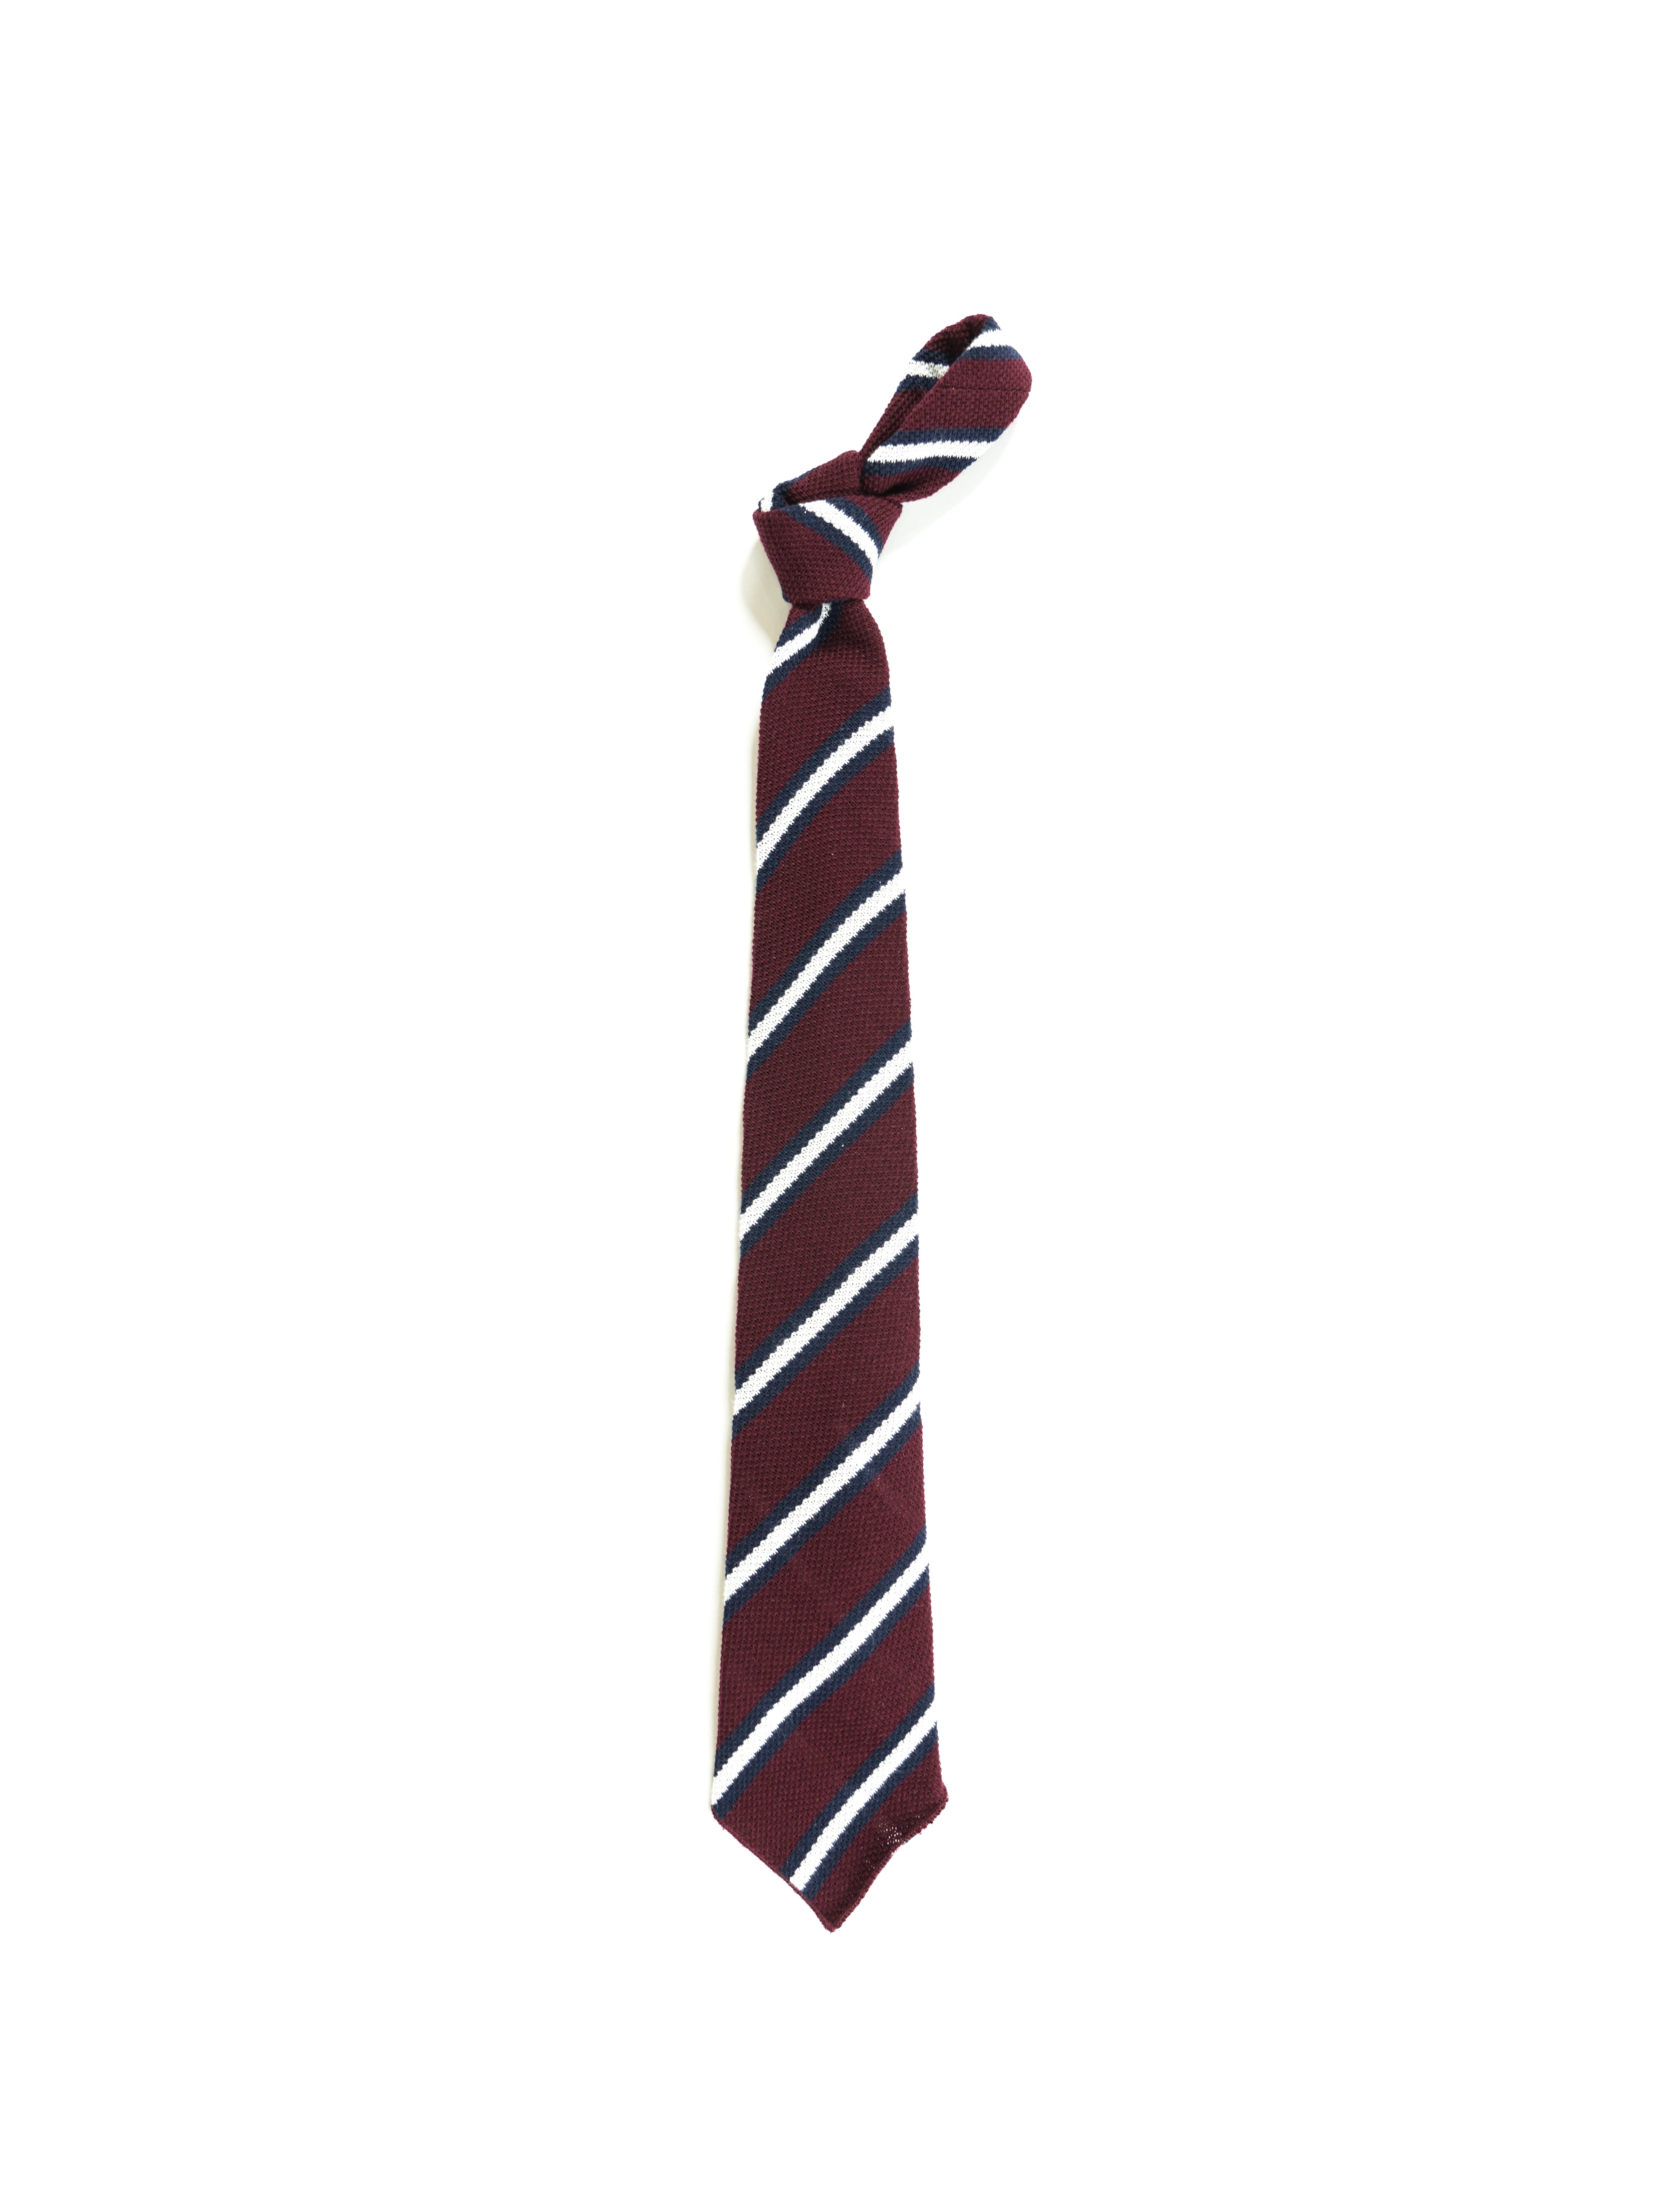 Knit Tie - Burgundy Stripe